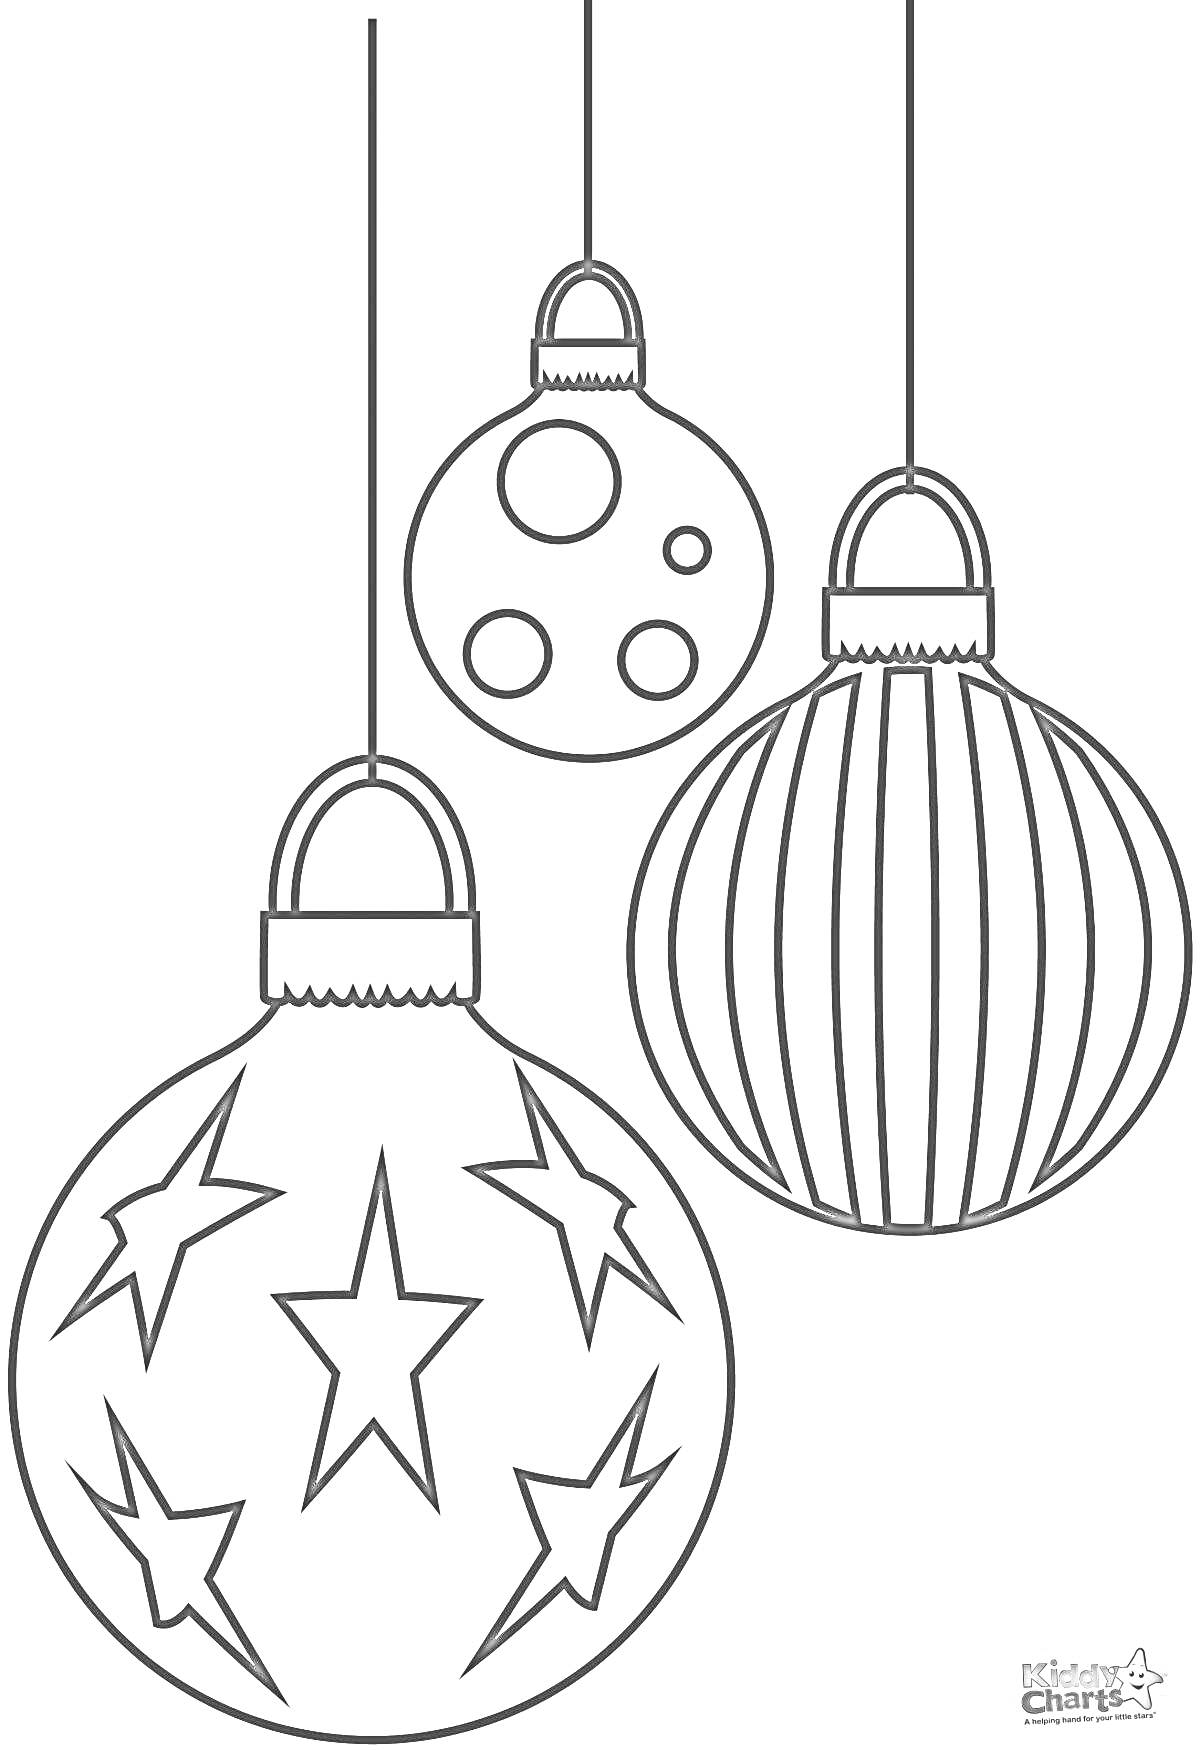 Раскраска Три новогодних шарика - один с полосками, один с кругами, один со звездами